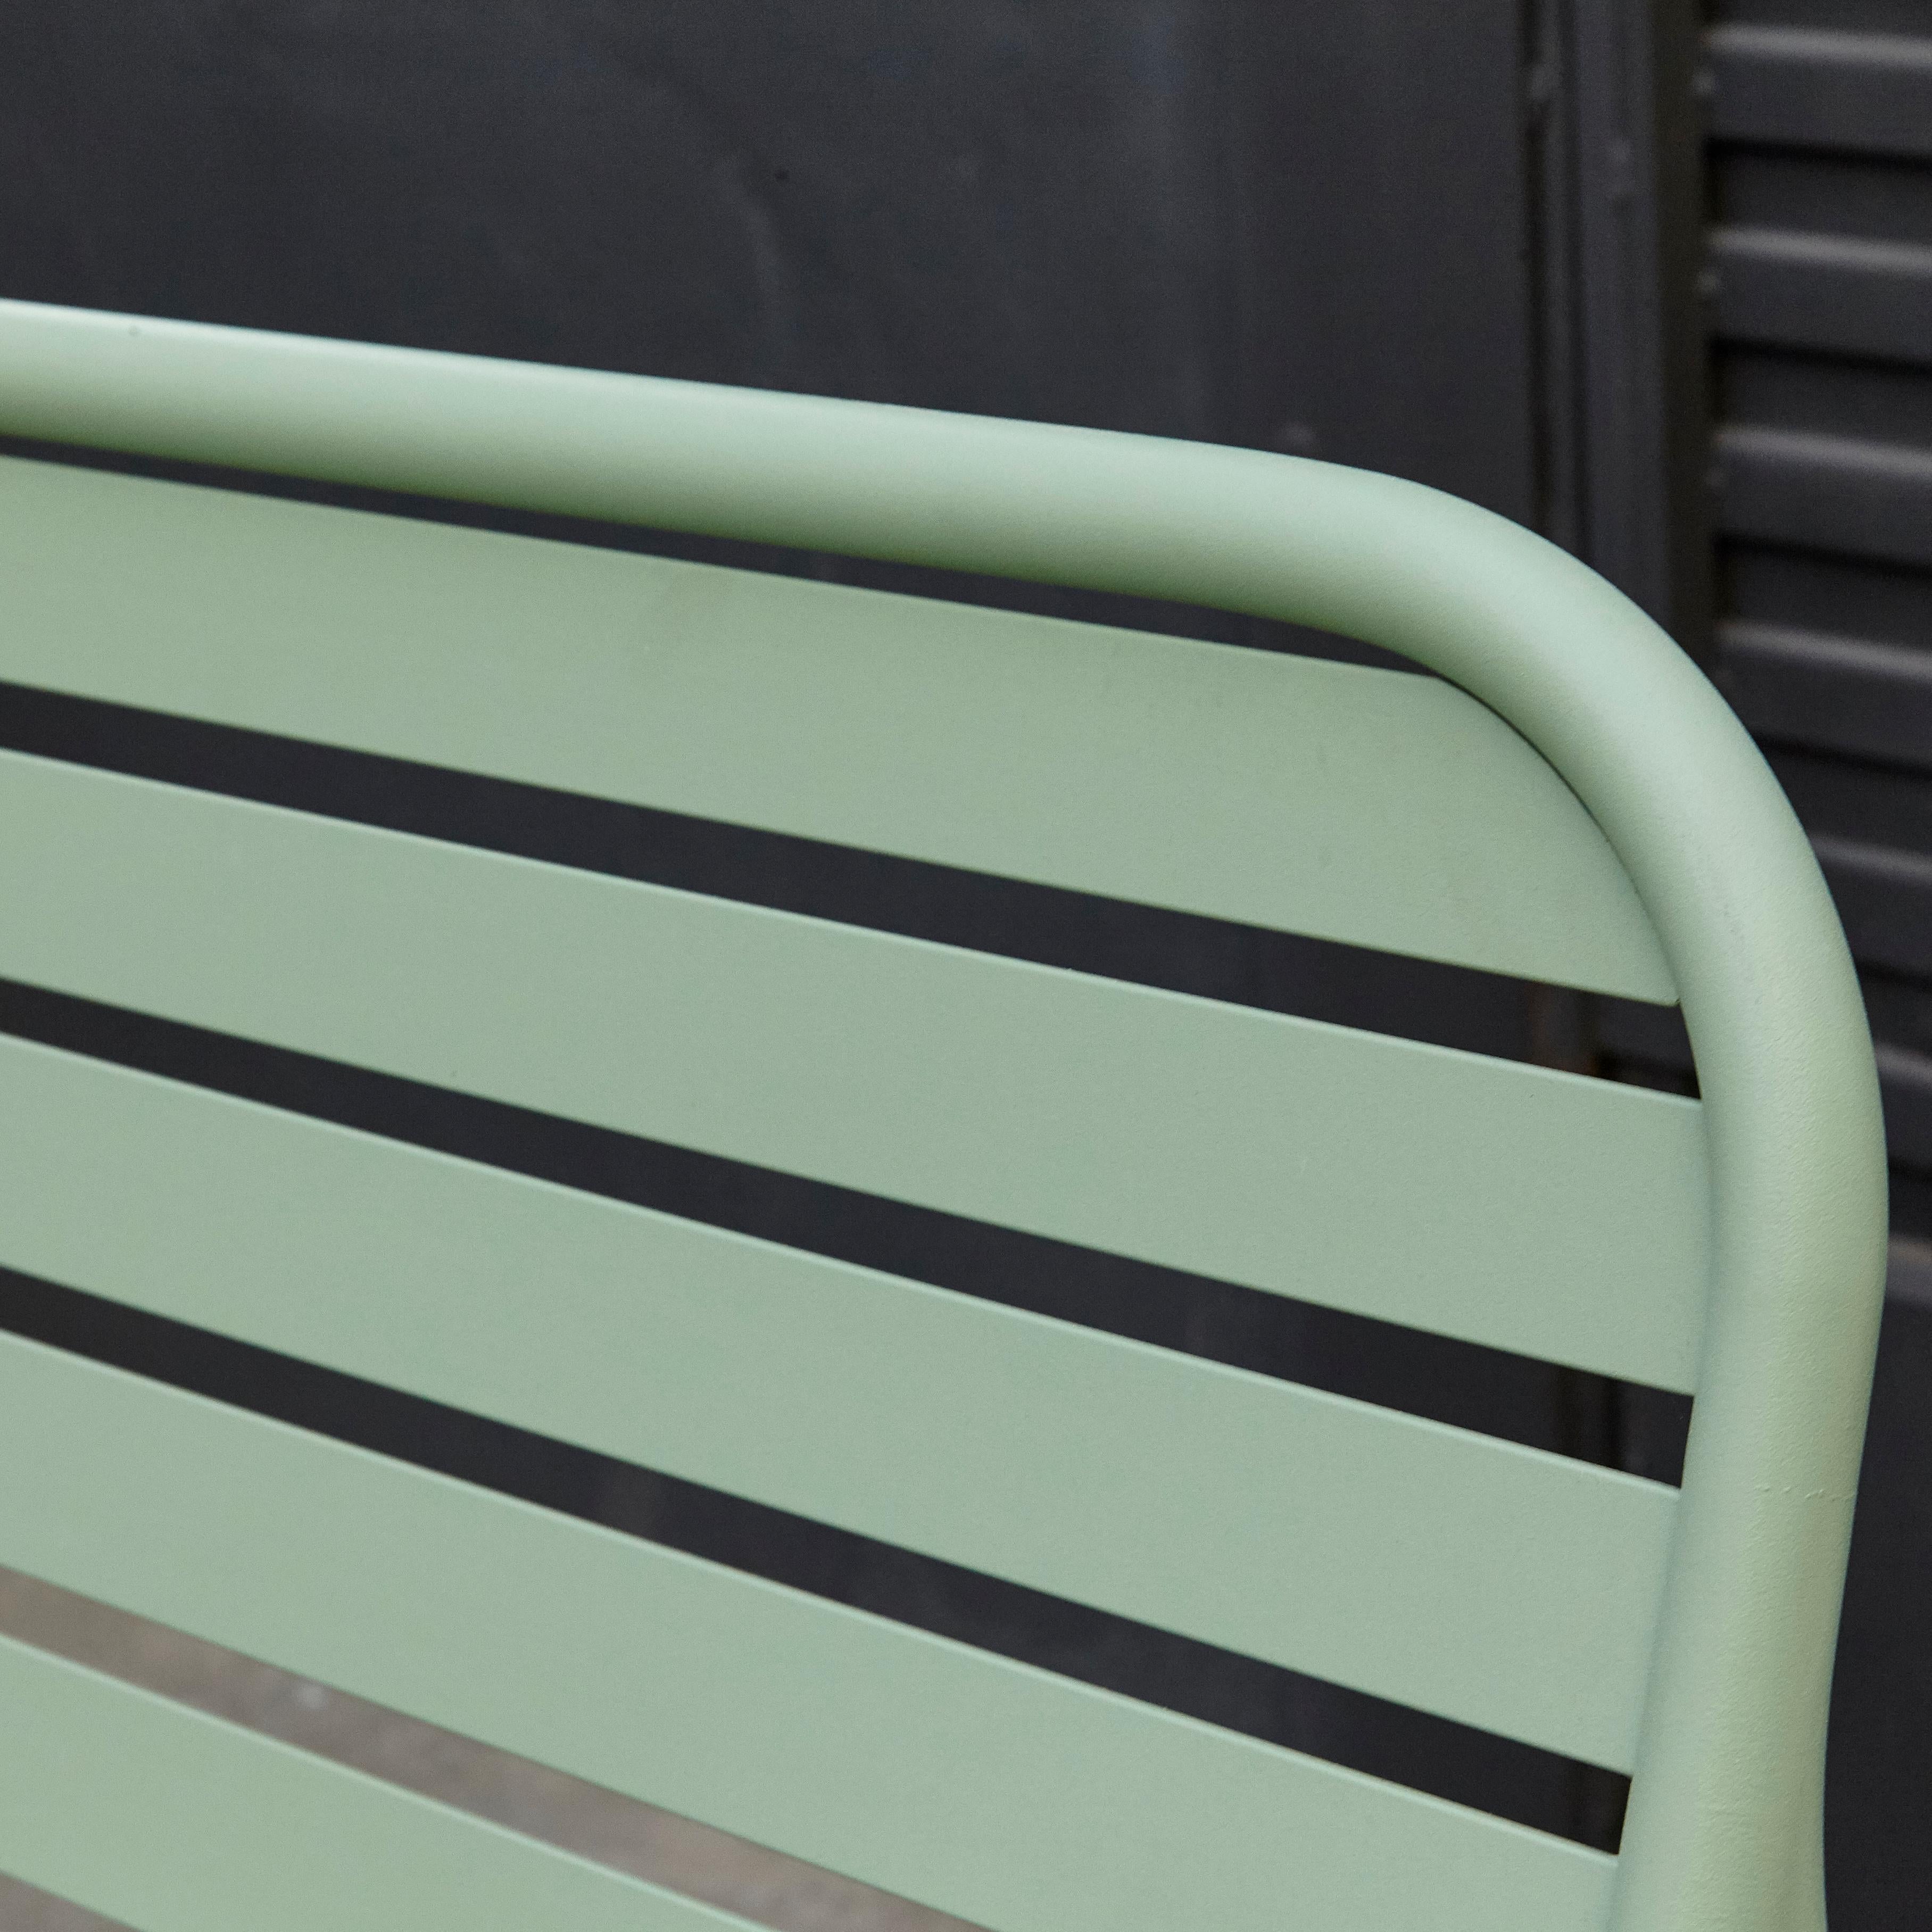 Jaime Hayon Contemporary Green Sculptural 'Gardenias' Outdoor Bench for BD 5